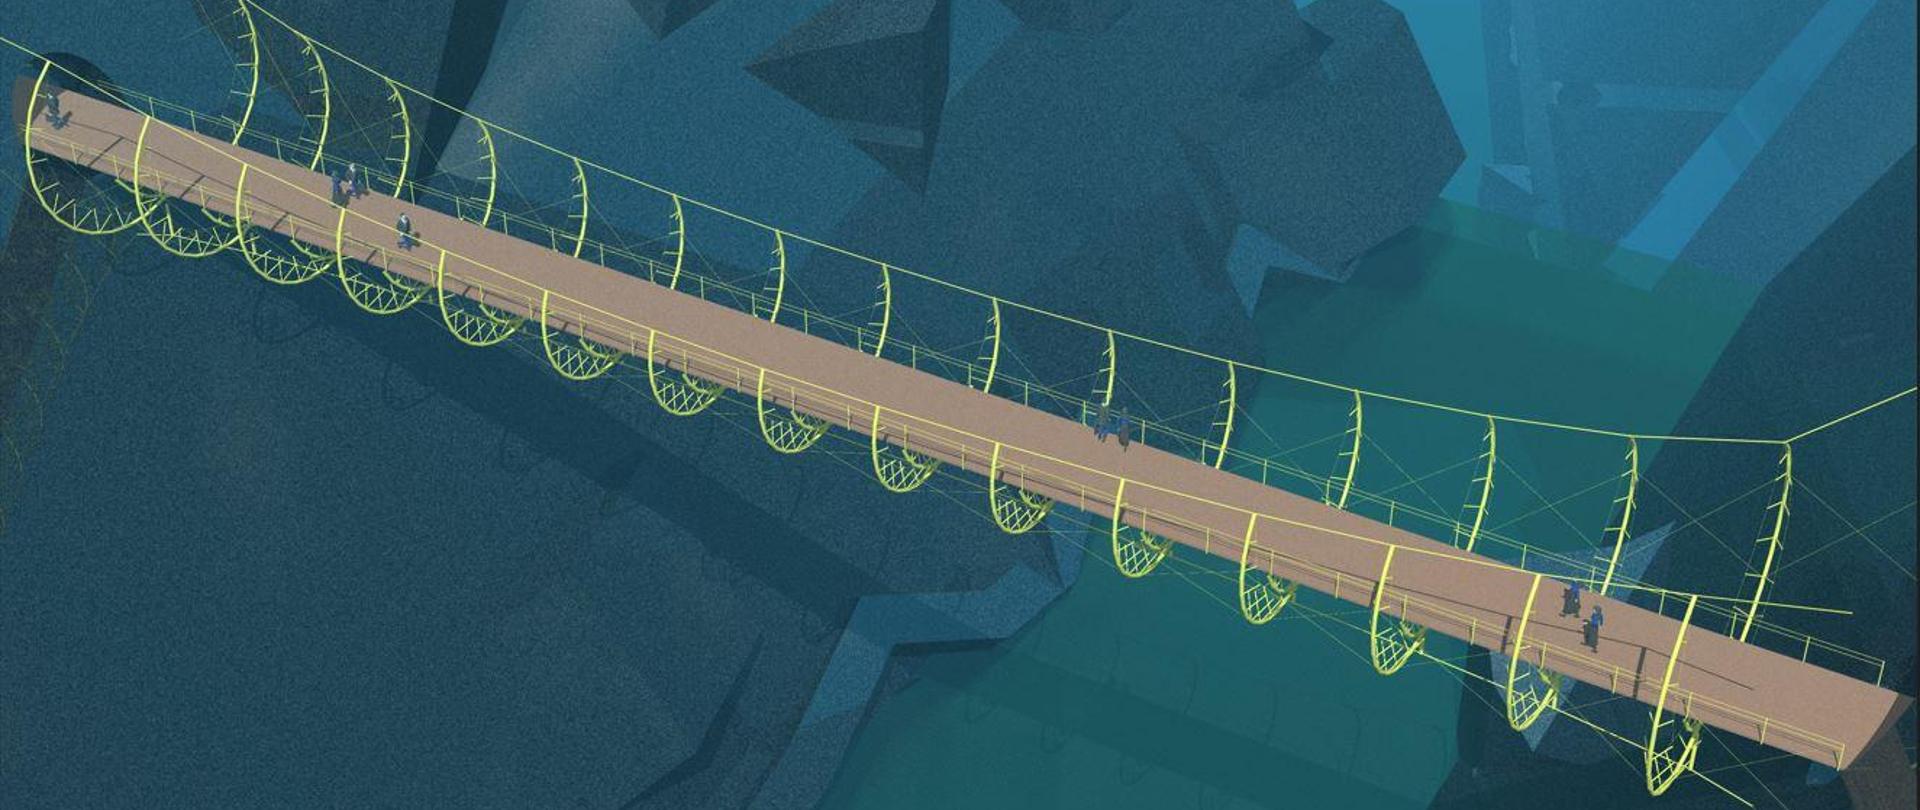 Wizualizacja przestrzenna, komputerowa. Długi, brązowy most z żółtymi linami zawieszony między granatowymi, szarymi, itd. bryłami. Po moście spacerują ludzie. Jest ich mało i są to bardzo małe postacie.